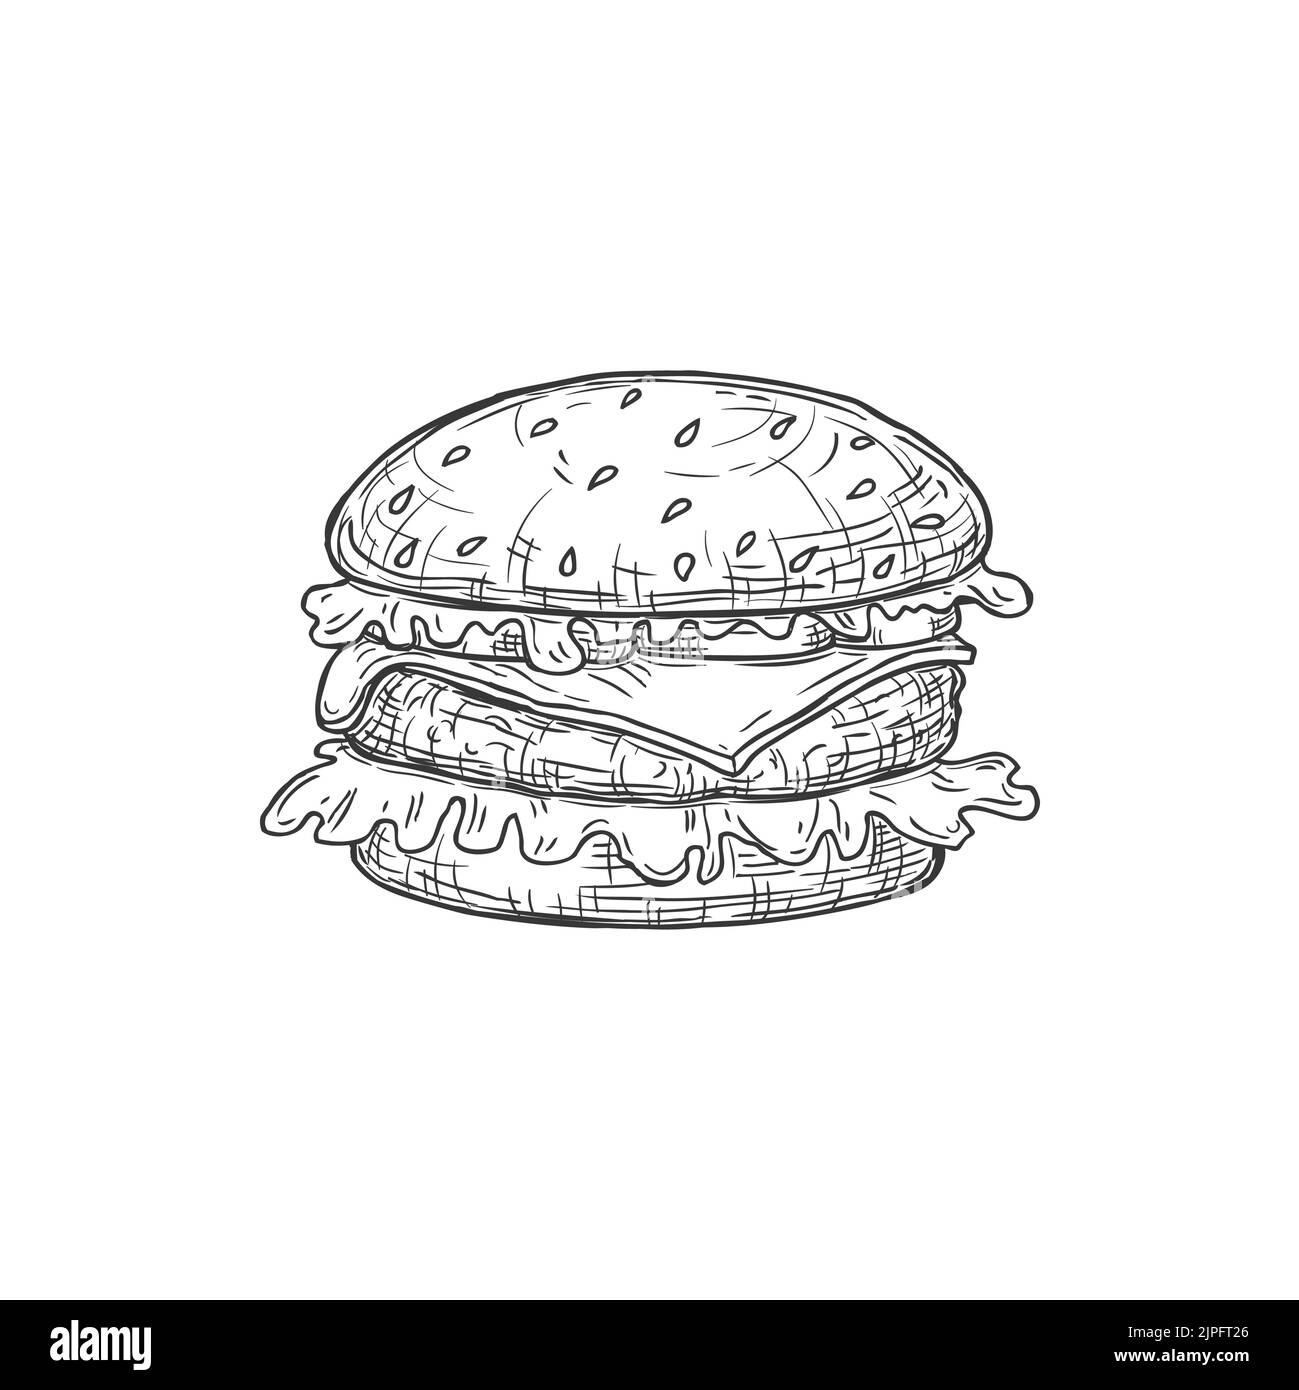 Cheeseburger Fastfood Snack isolierte Hamburger-Symbol einfarbige Skizze. Vector amerikanisches Brötchen mit Fleisch und Salat. Takeout-Objekt, Street Food Takeaway Junkfood Hamburger oder Cheeseburger-Symbol Stock Vektor